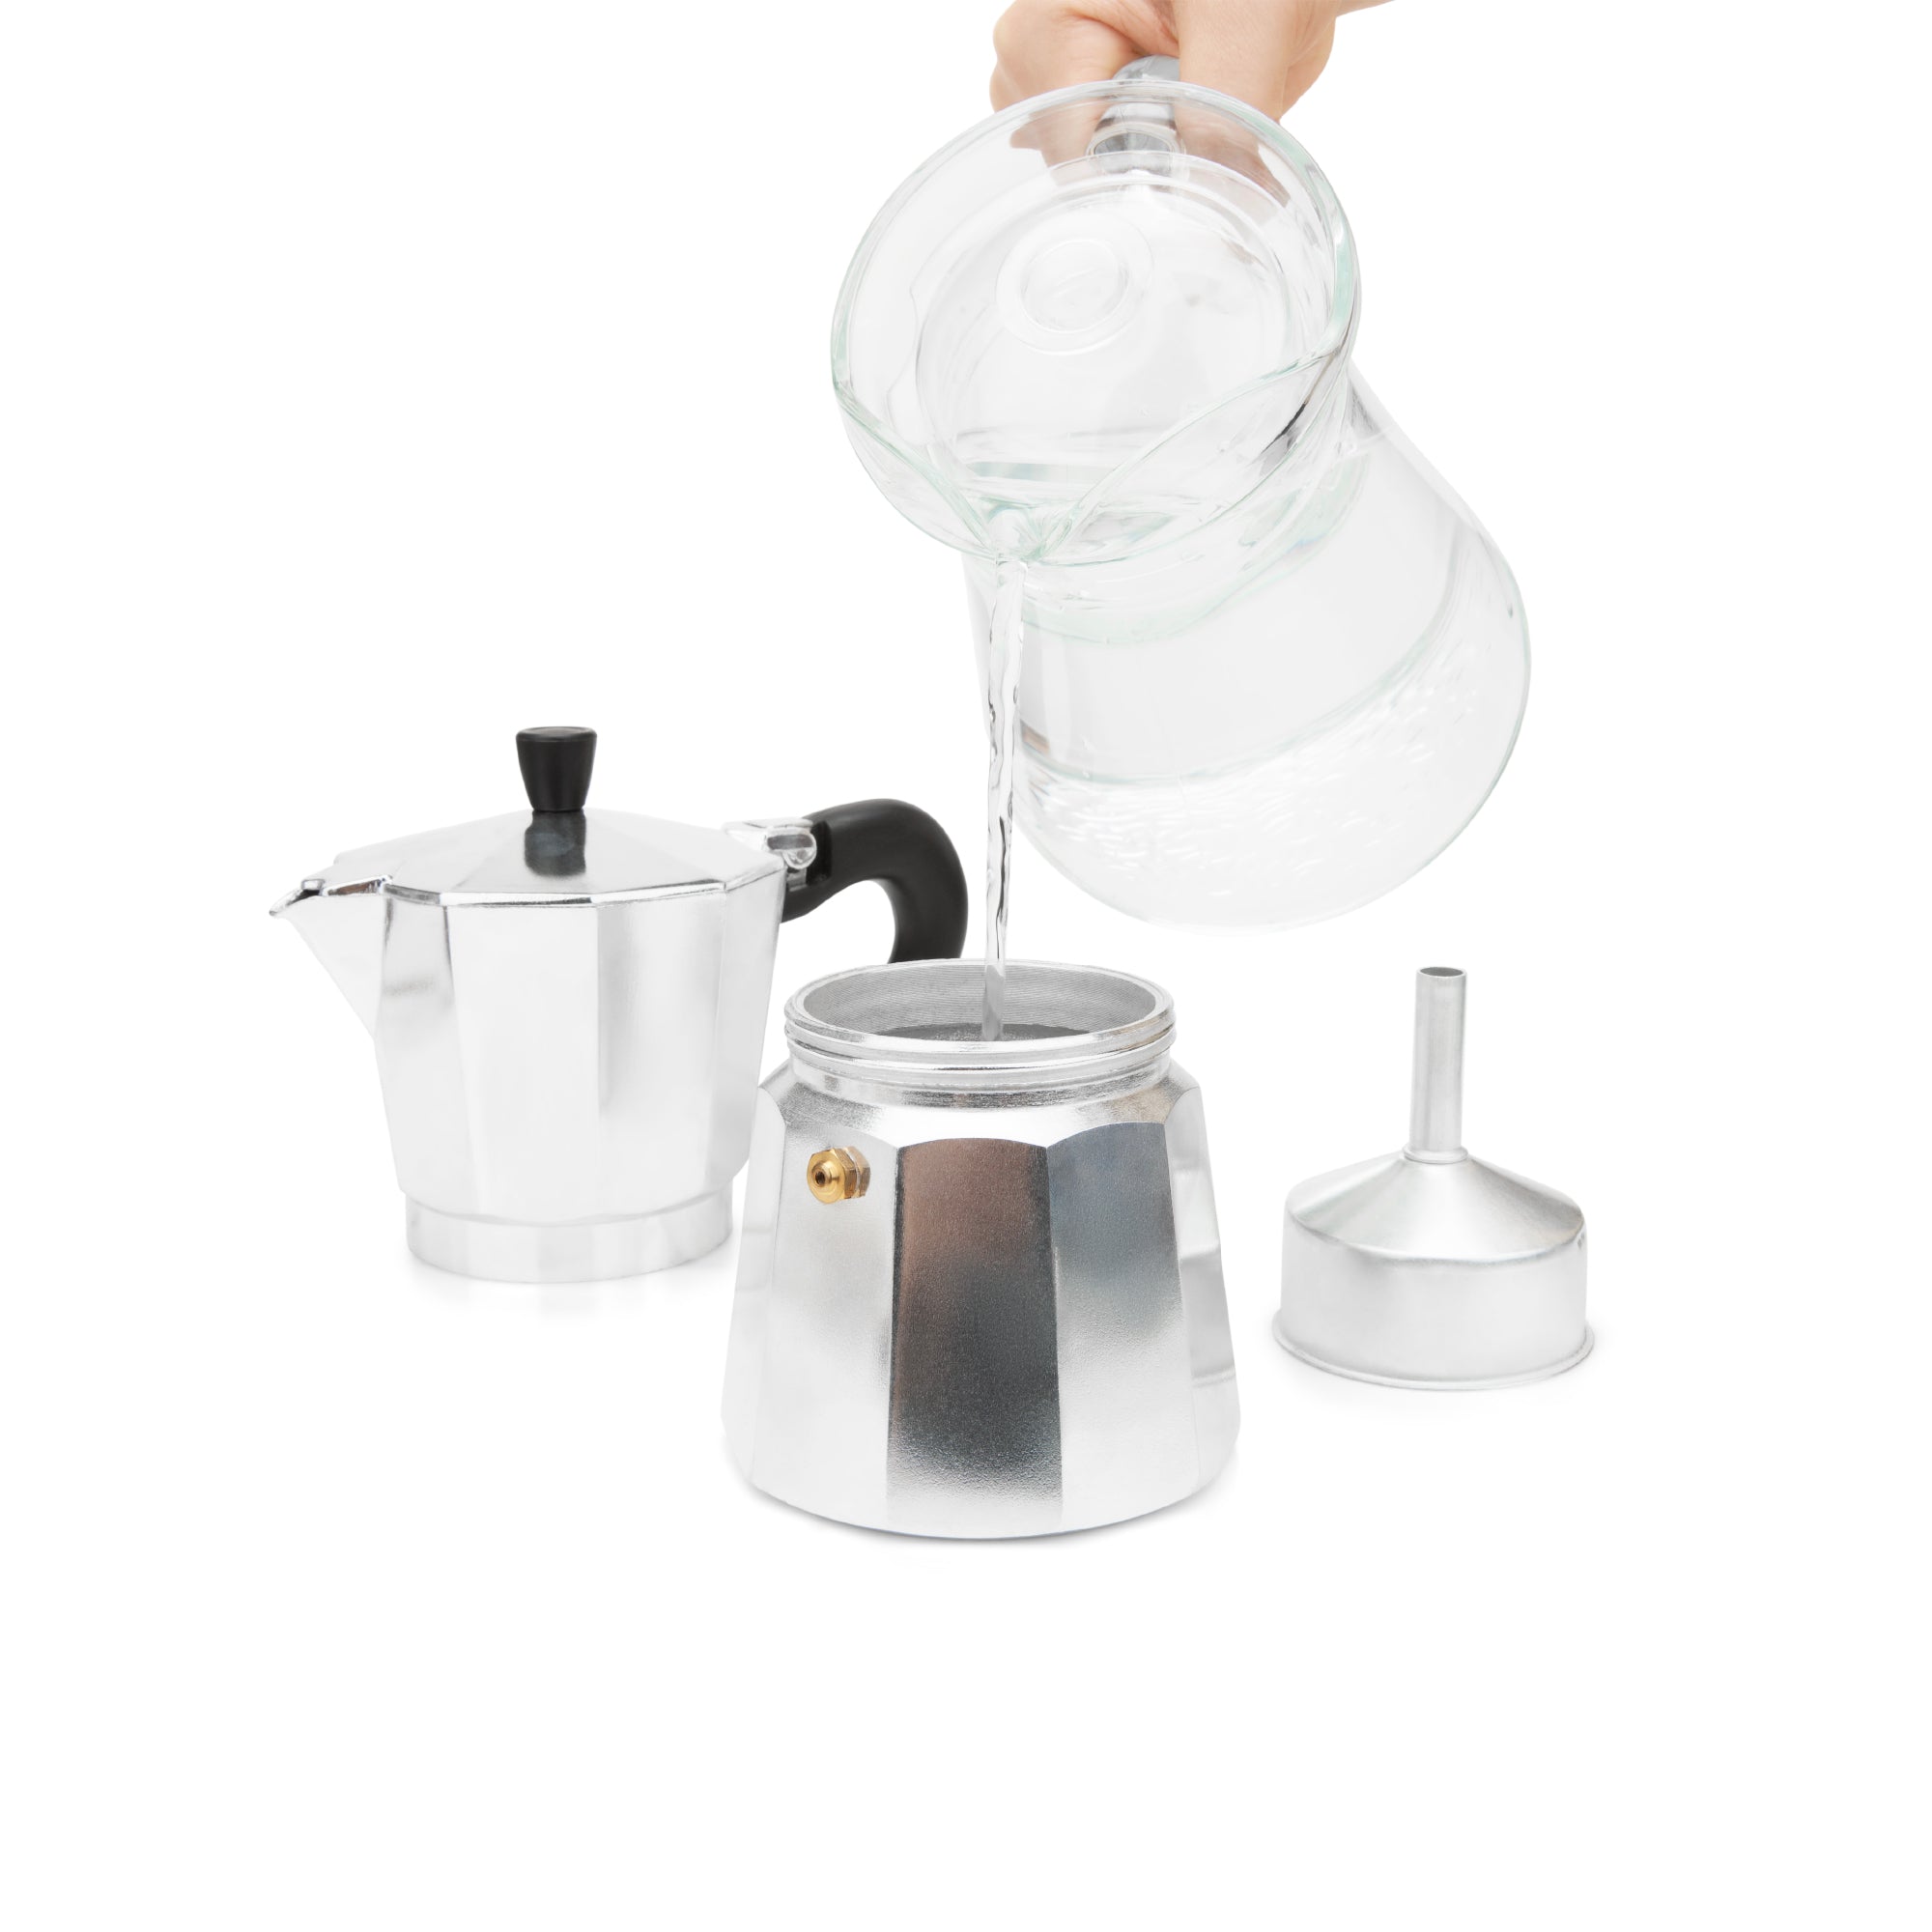 Moka Pot Espresso Maker 6 Cup Capacity Model Rupple - ShopiPersia